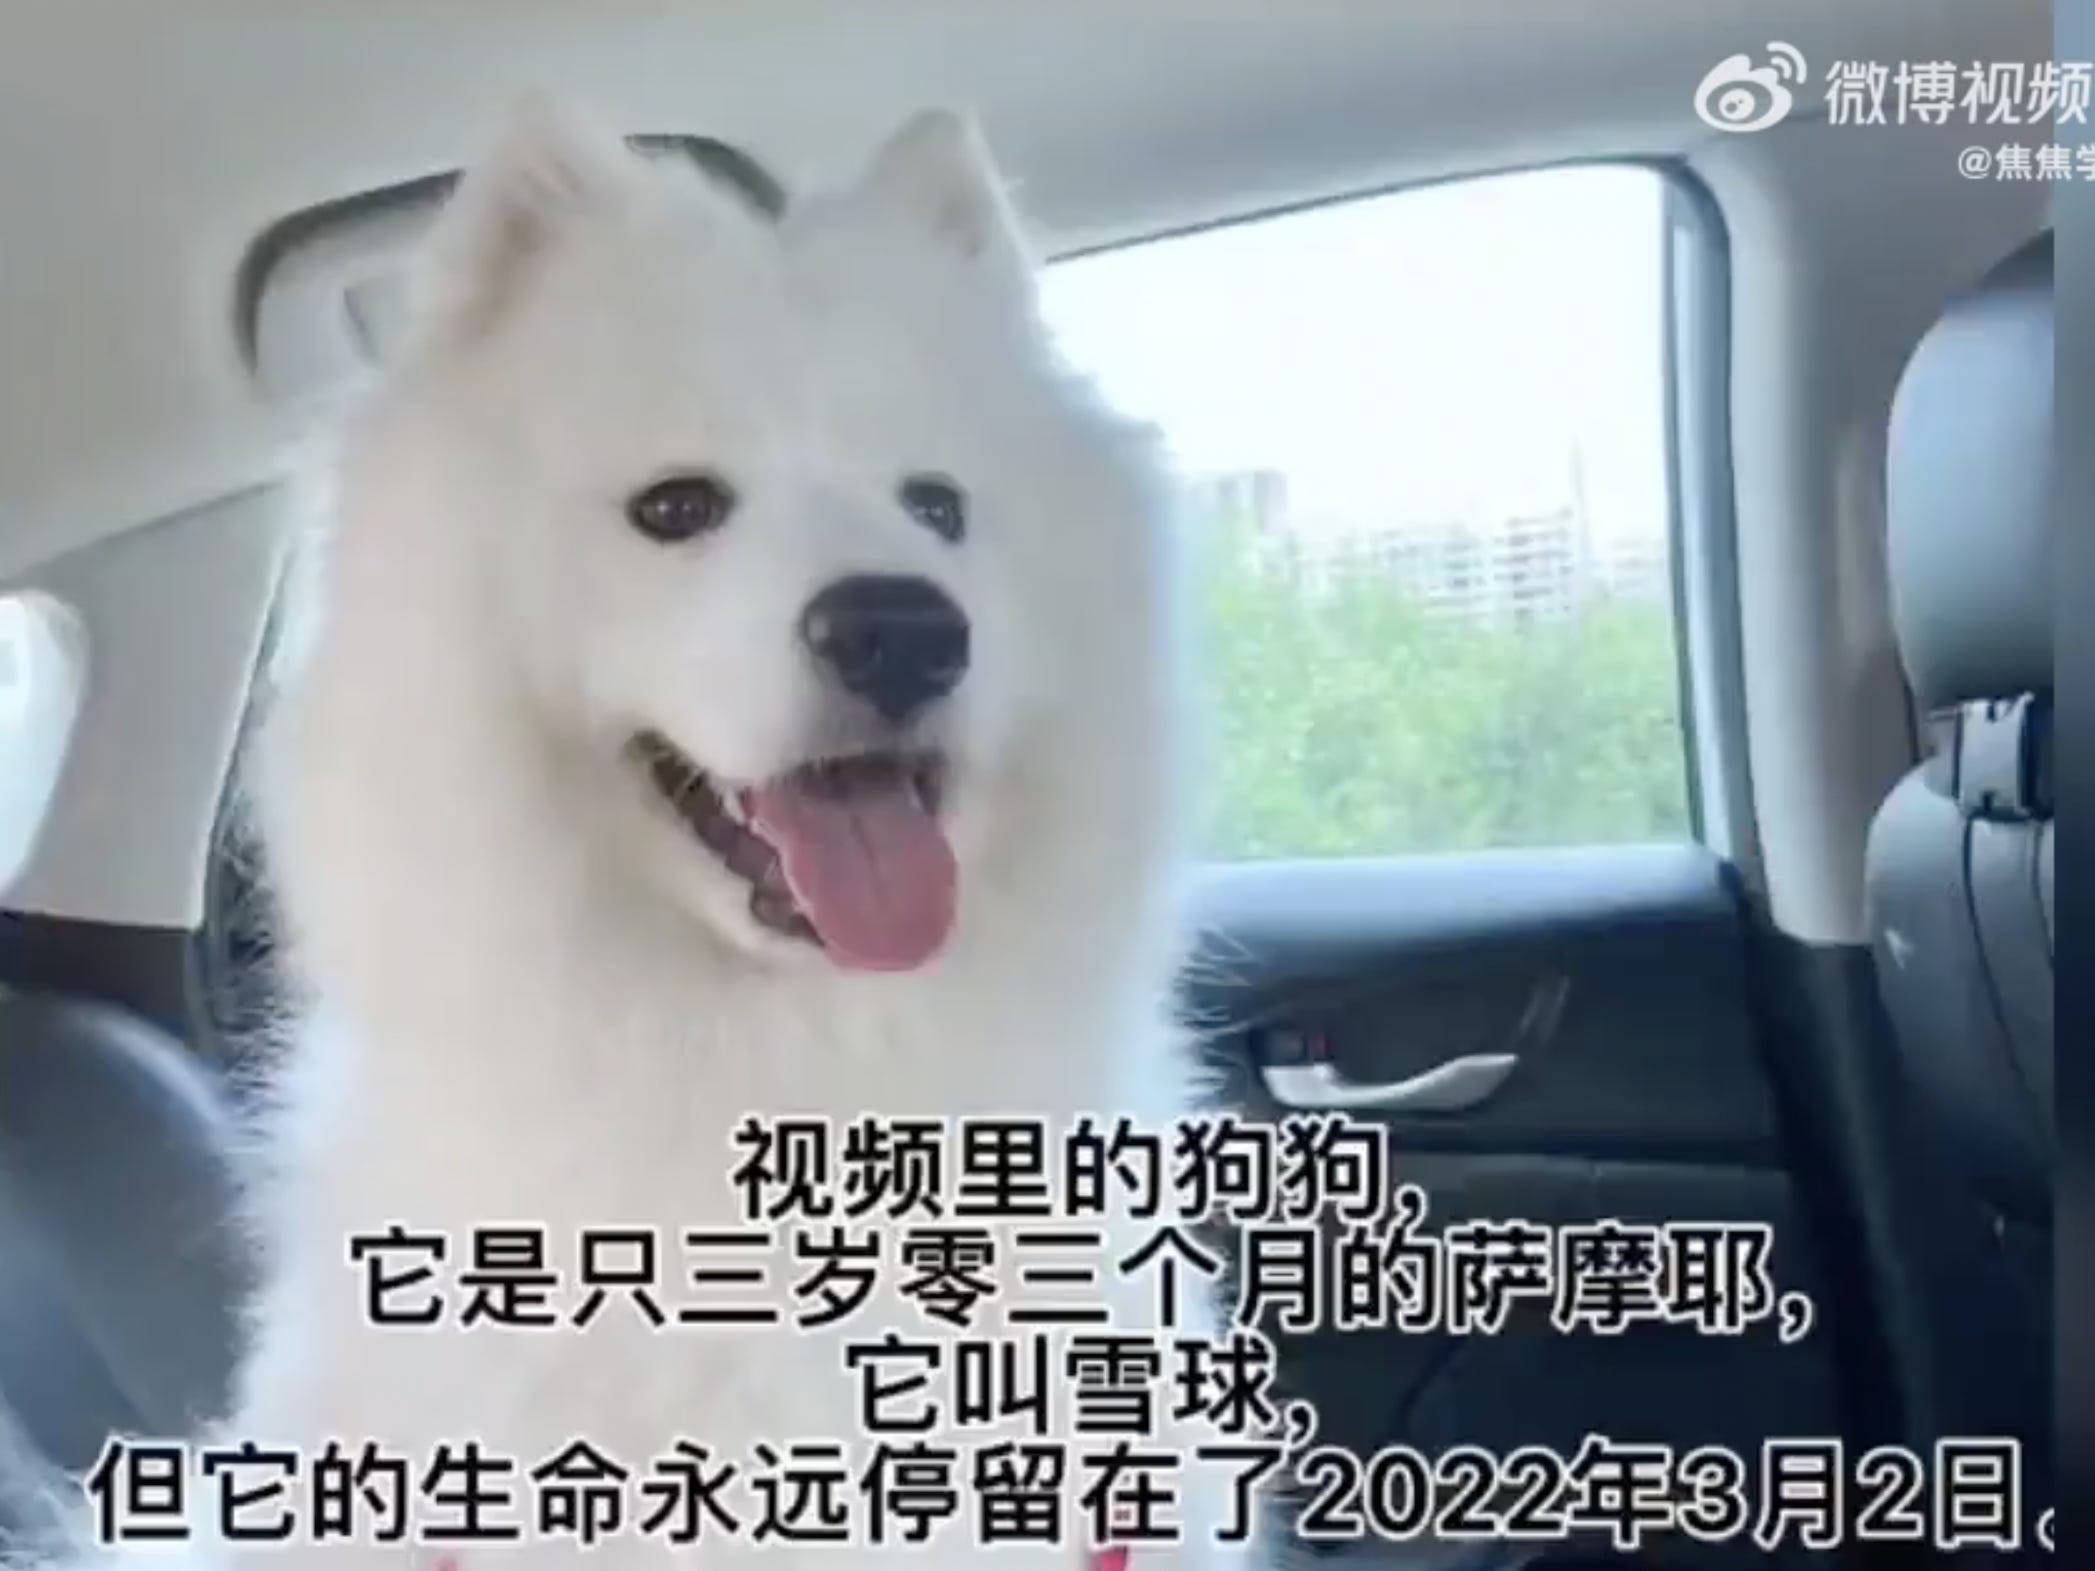 Screenshot des Weibo-Beitrags mit dem Samojeden-Hund Snowball